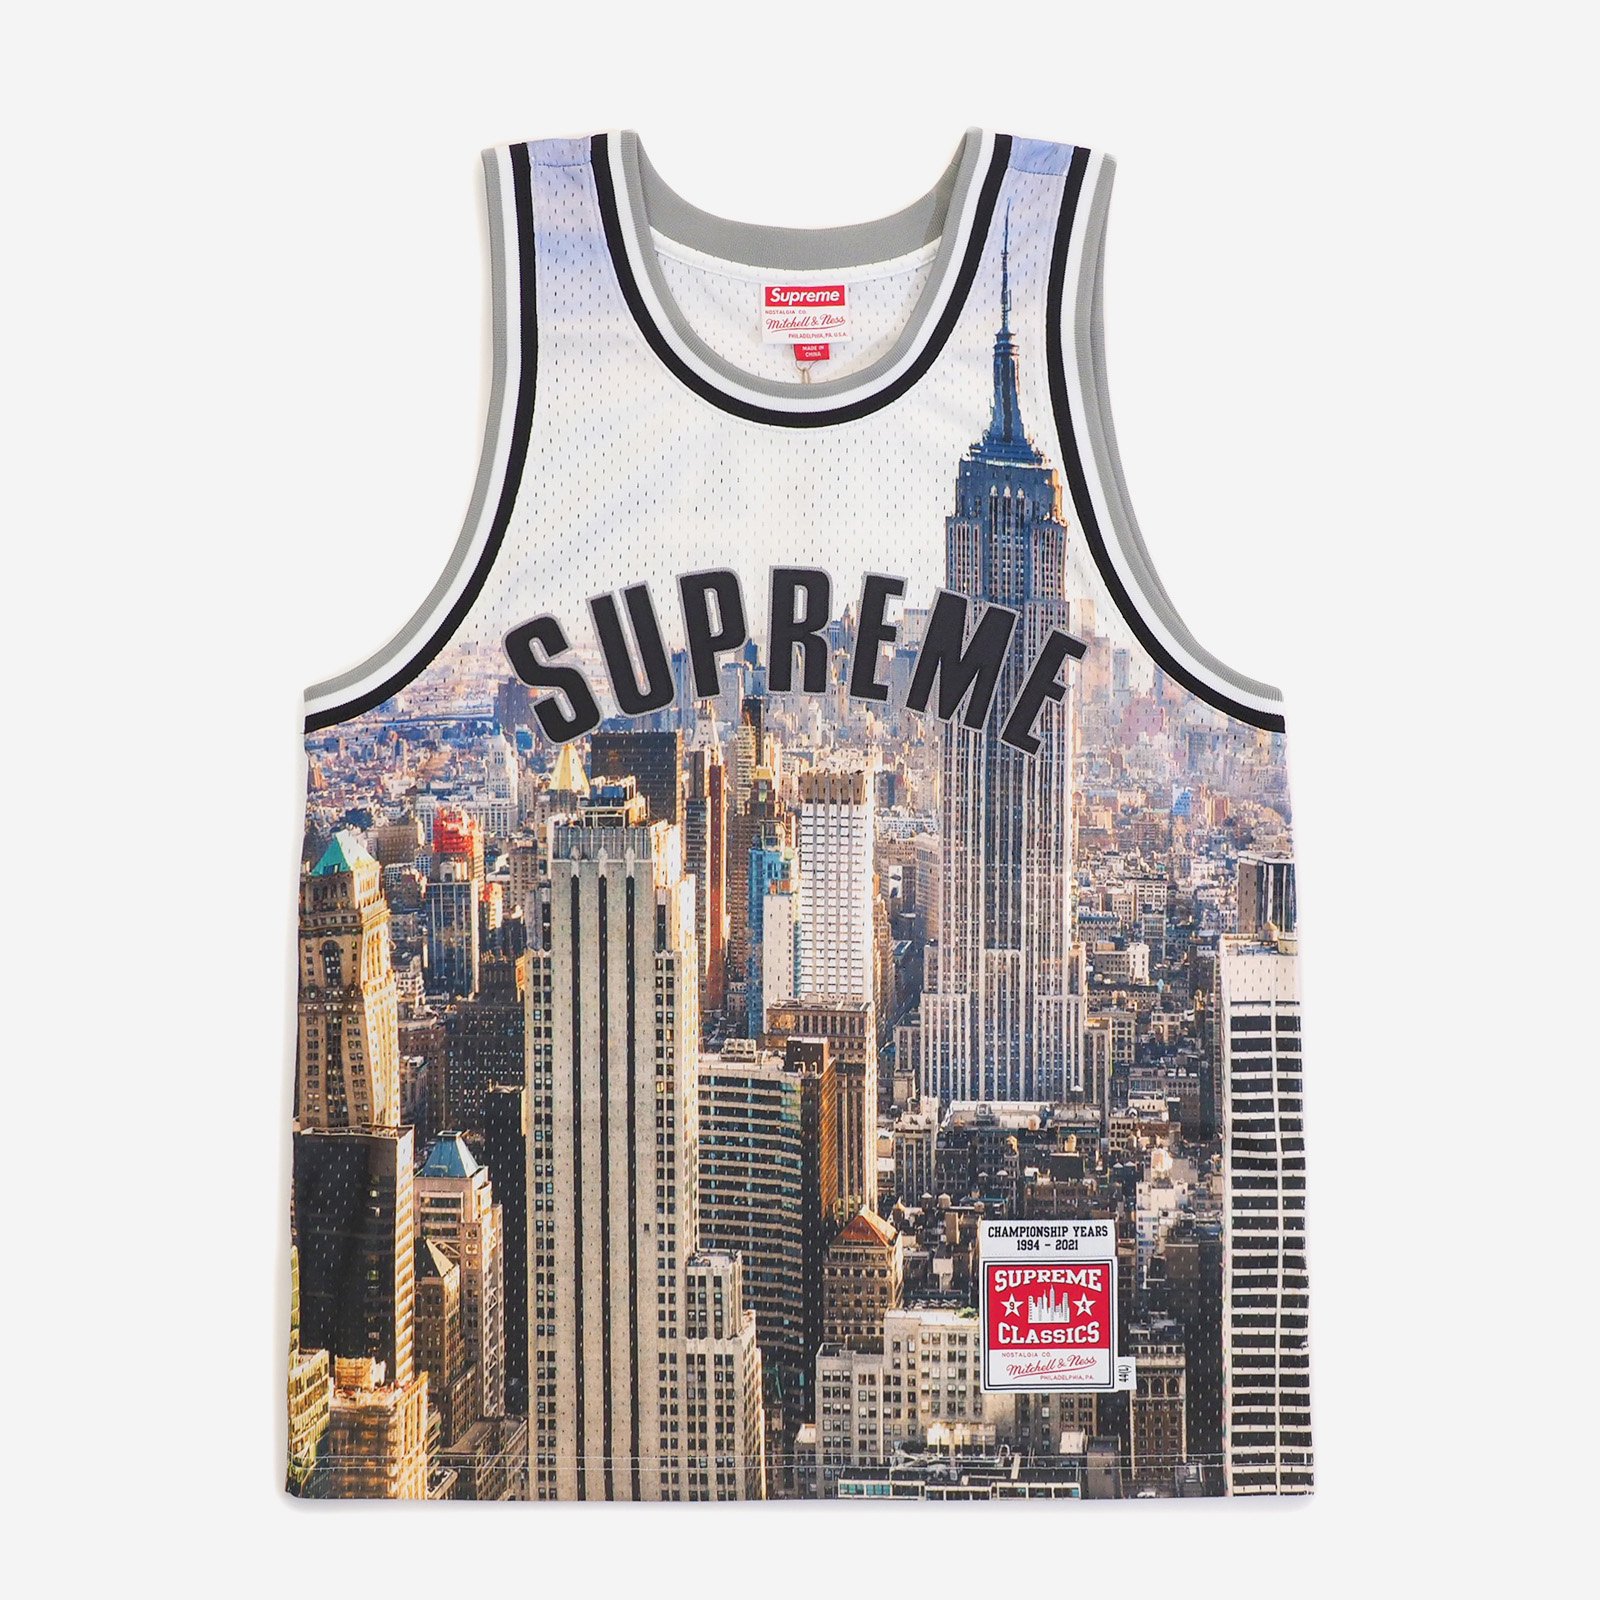 Supreme/Mitchell & Ness Basketball Jersey - UG.SHAFT